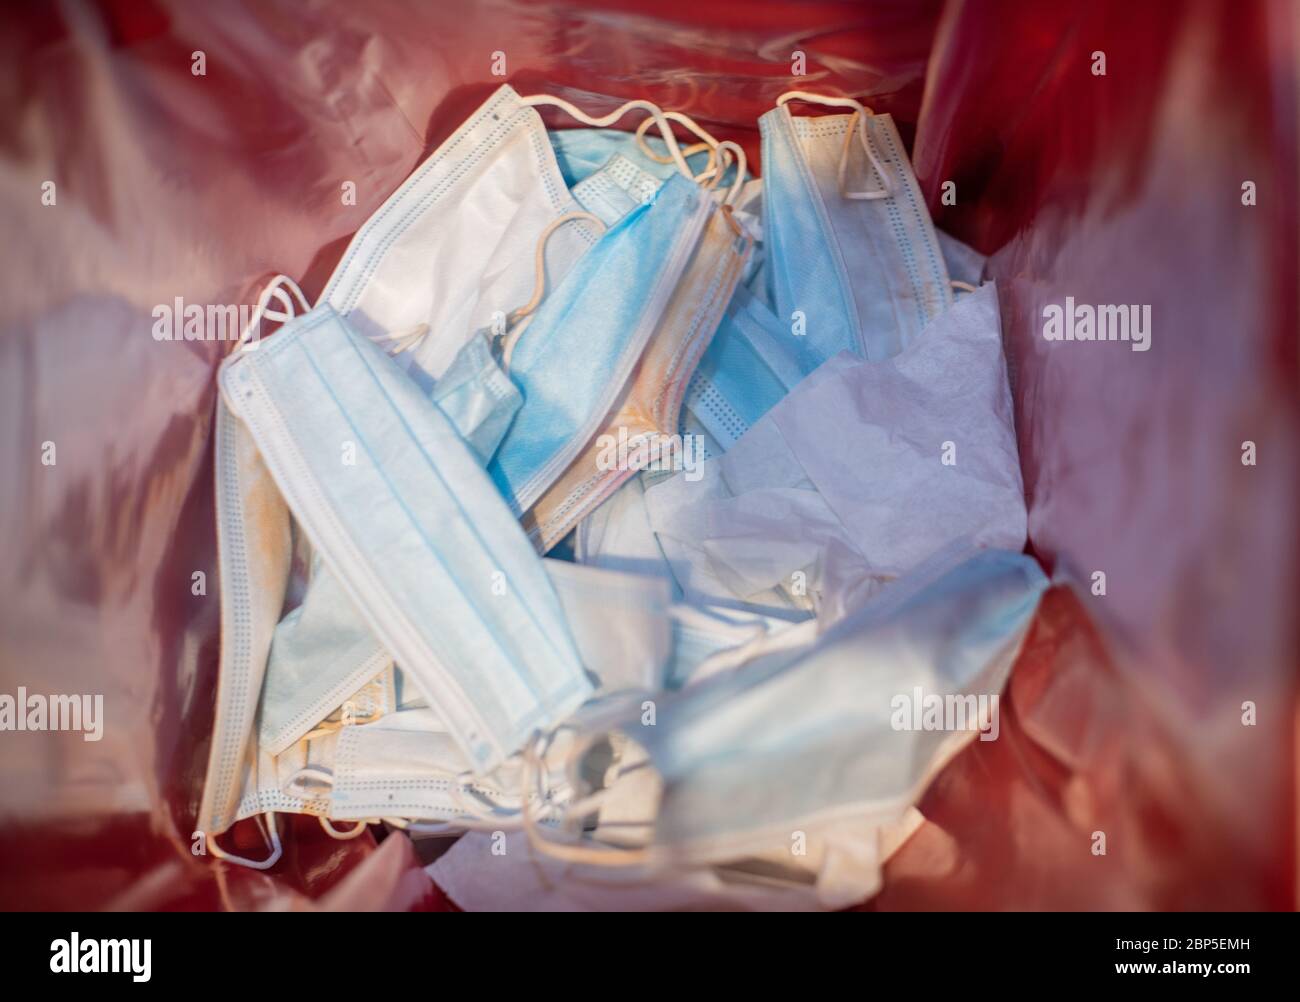 Chirurgische Maske in den Abfallbehälter für medizinische Geräte geworfen Stockfoto